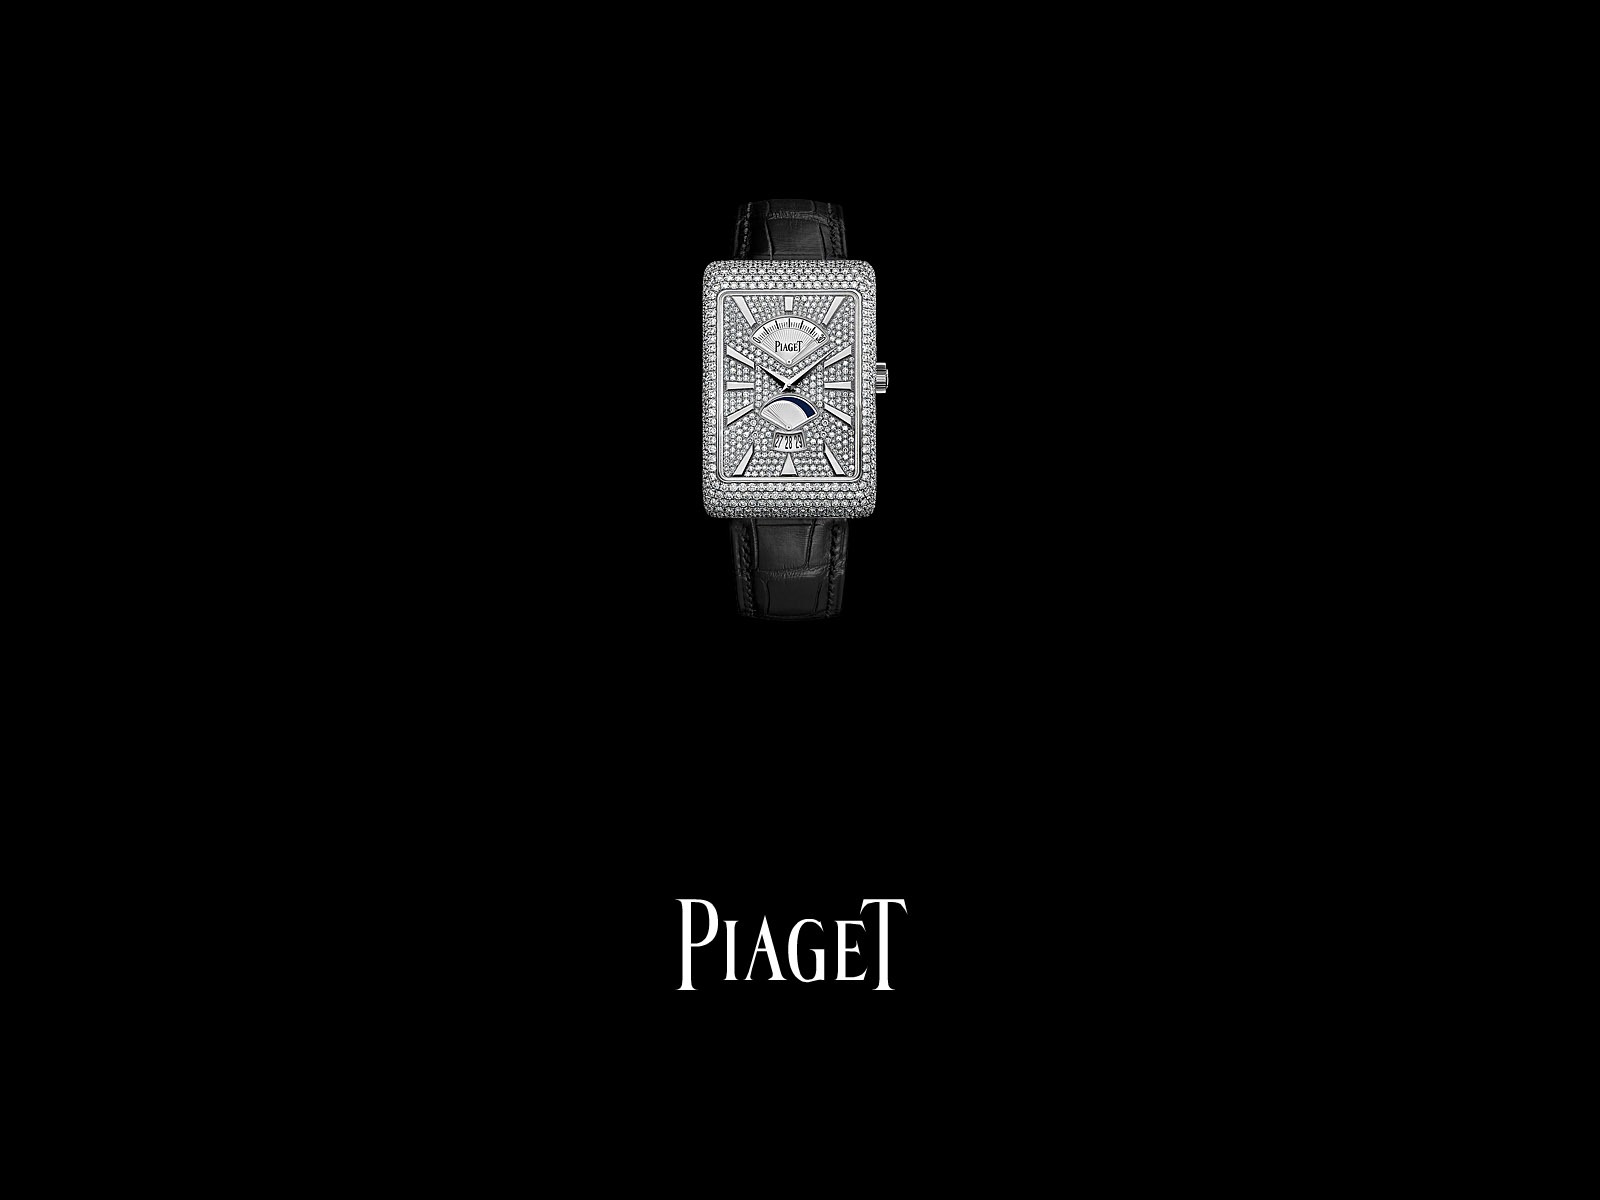 피아제 다이아몬드 시계 벽지 (3) #2 - 1600x1200